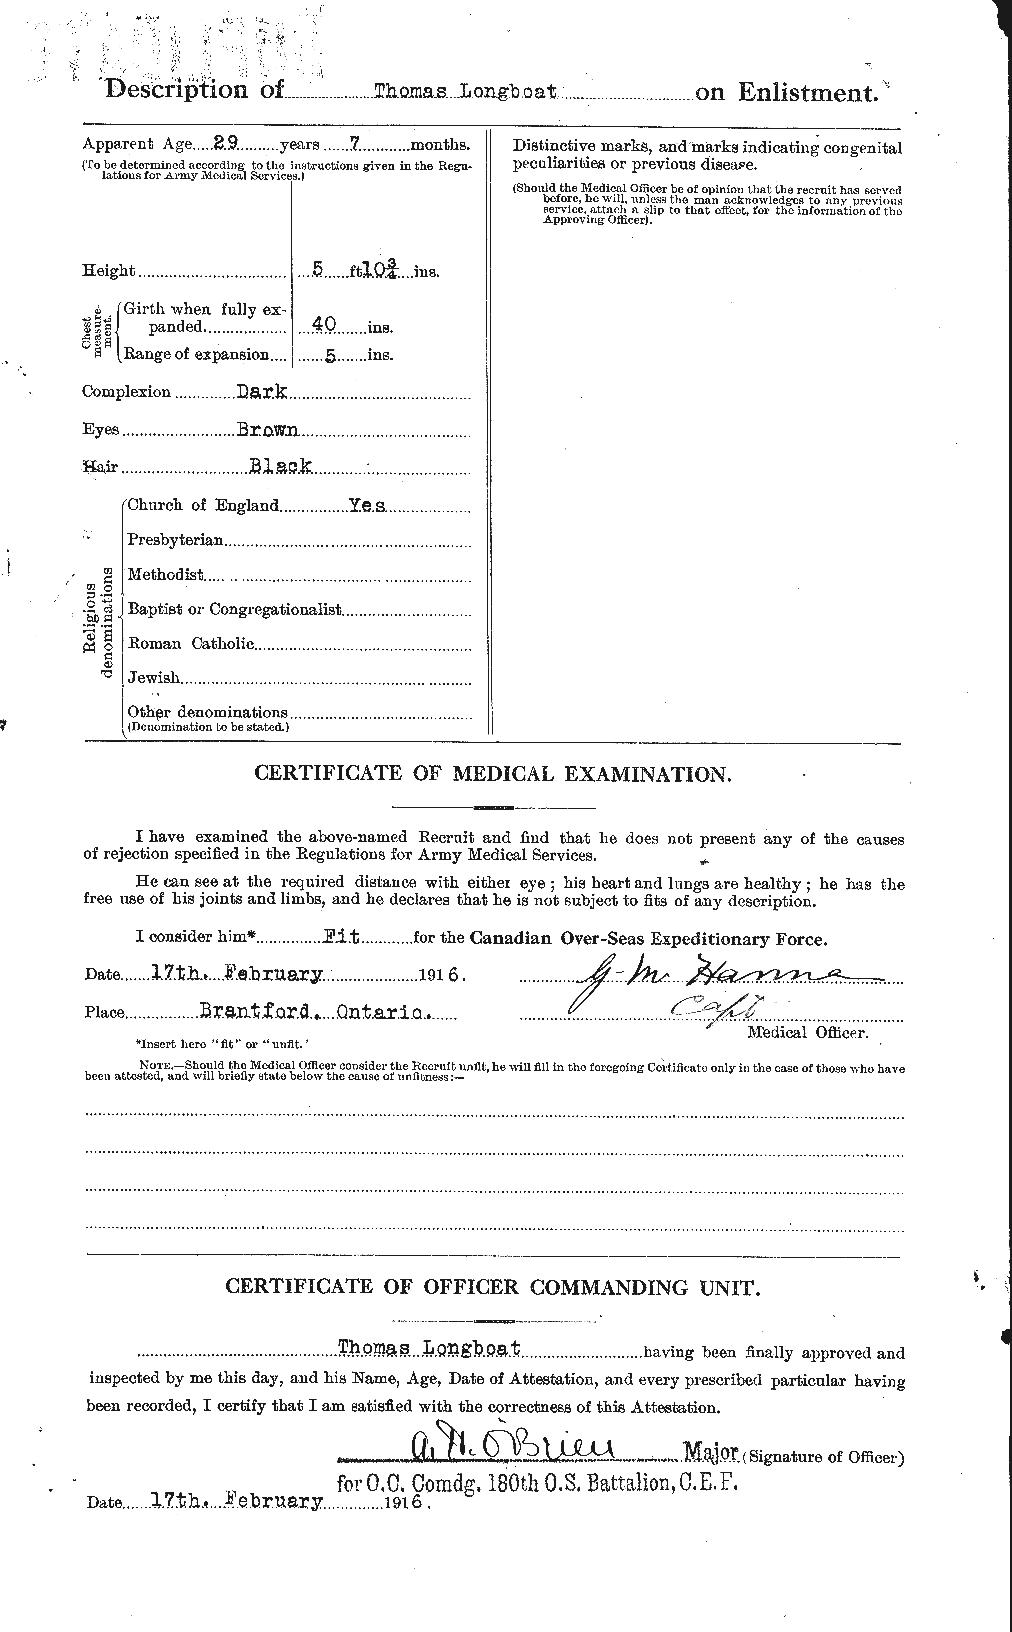 Dossiers du Personnel de la Première Guerre mondiale - CEC 238864b